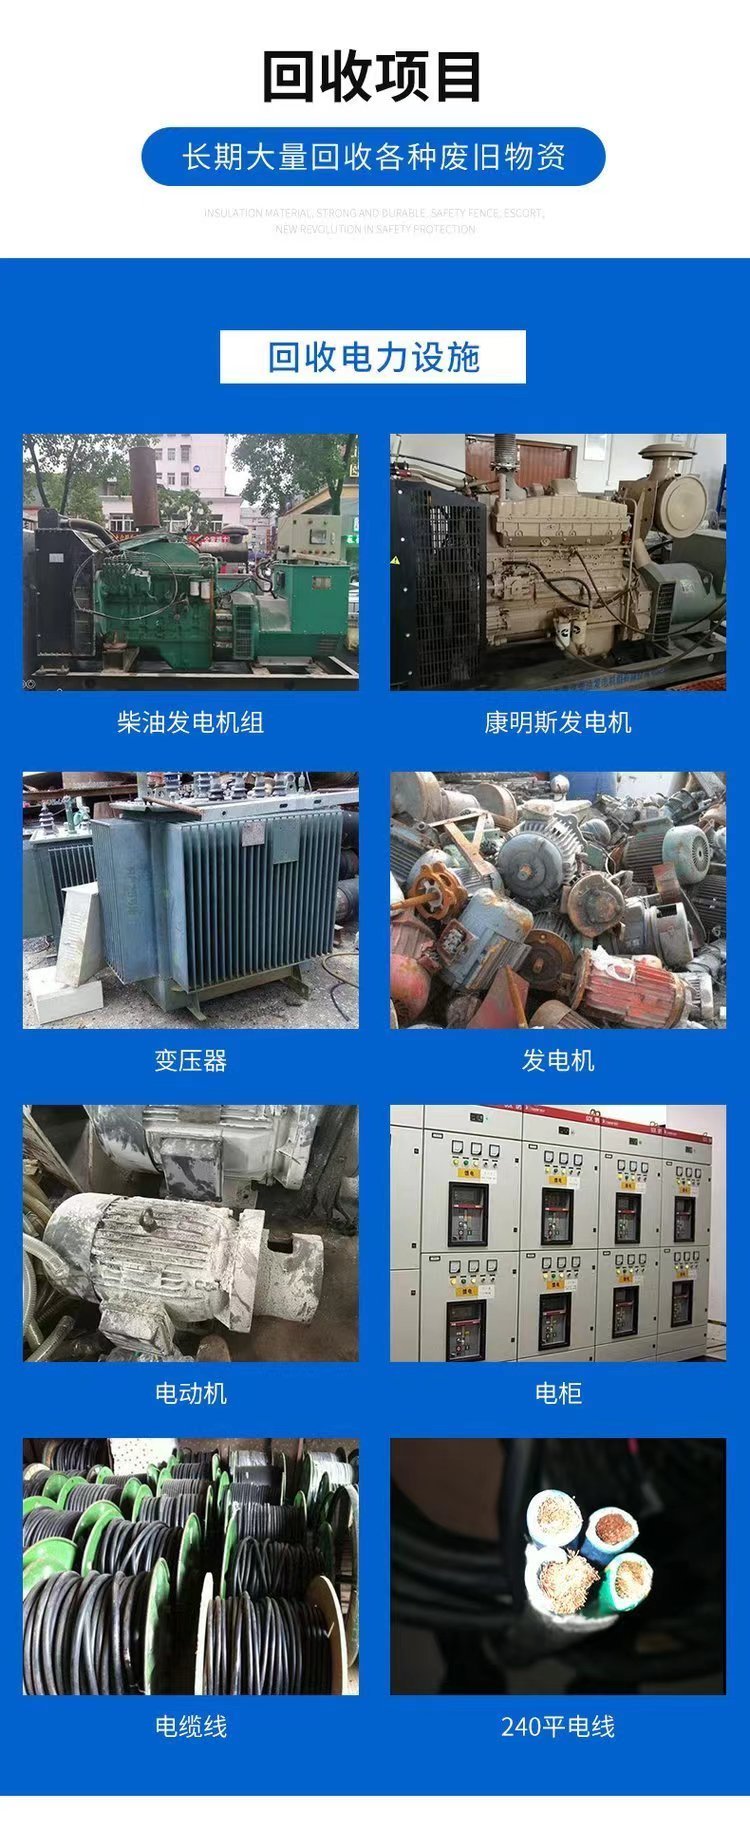 东莞长安镇配电房拆除电力设备回收公司电话估价